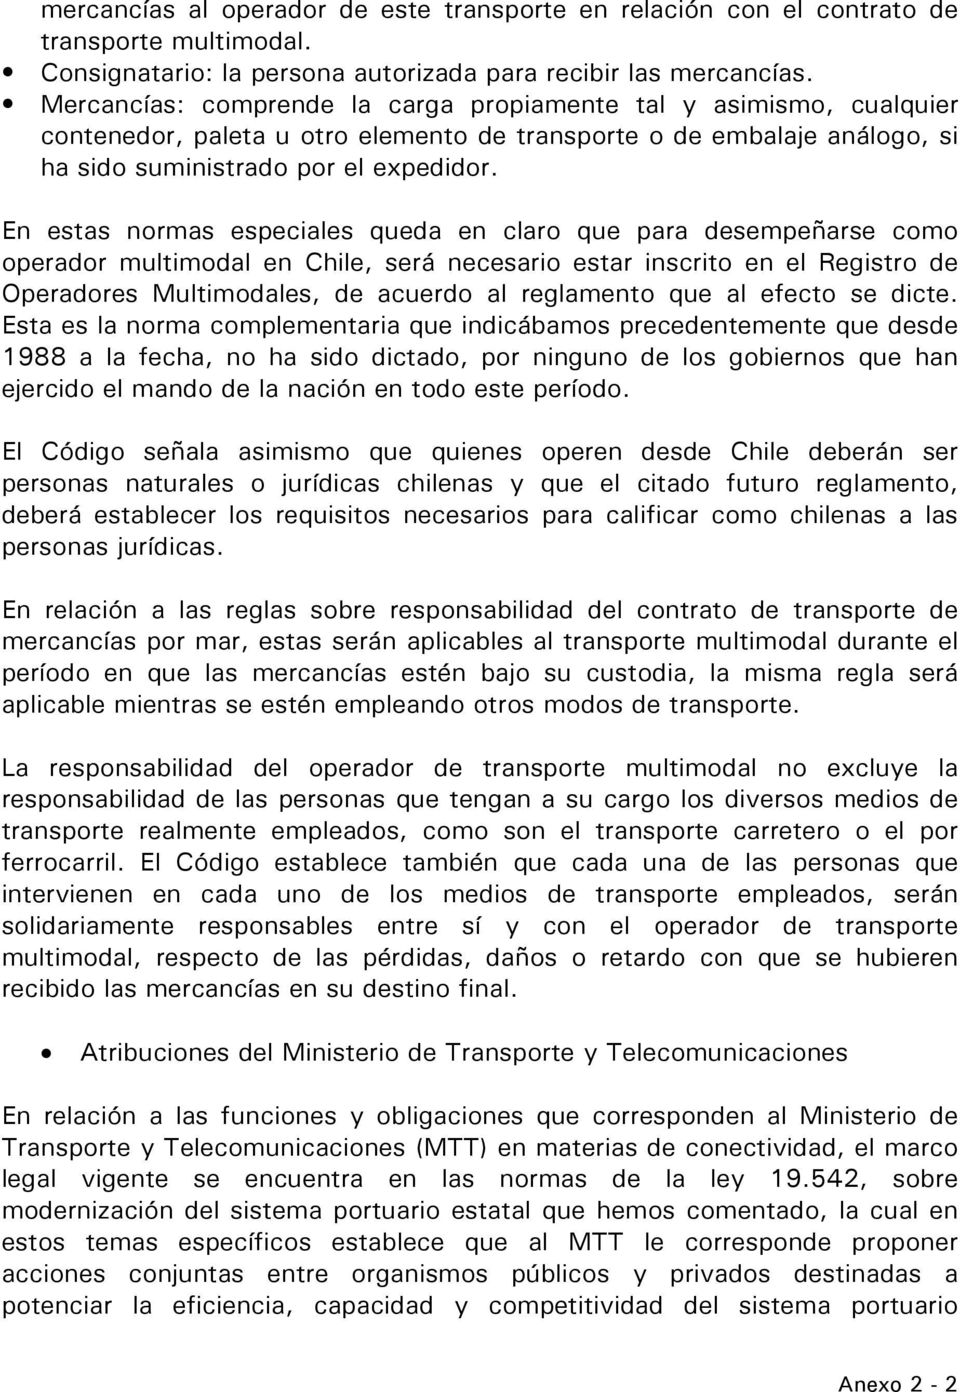 En estas normas especiales queda en claro que para desempeñarse como operador multimodal en Chile, será necesario estar inscrito en el Registro de Operadores Multimodales, de acuerdo al reglamento